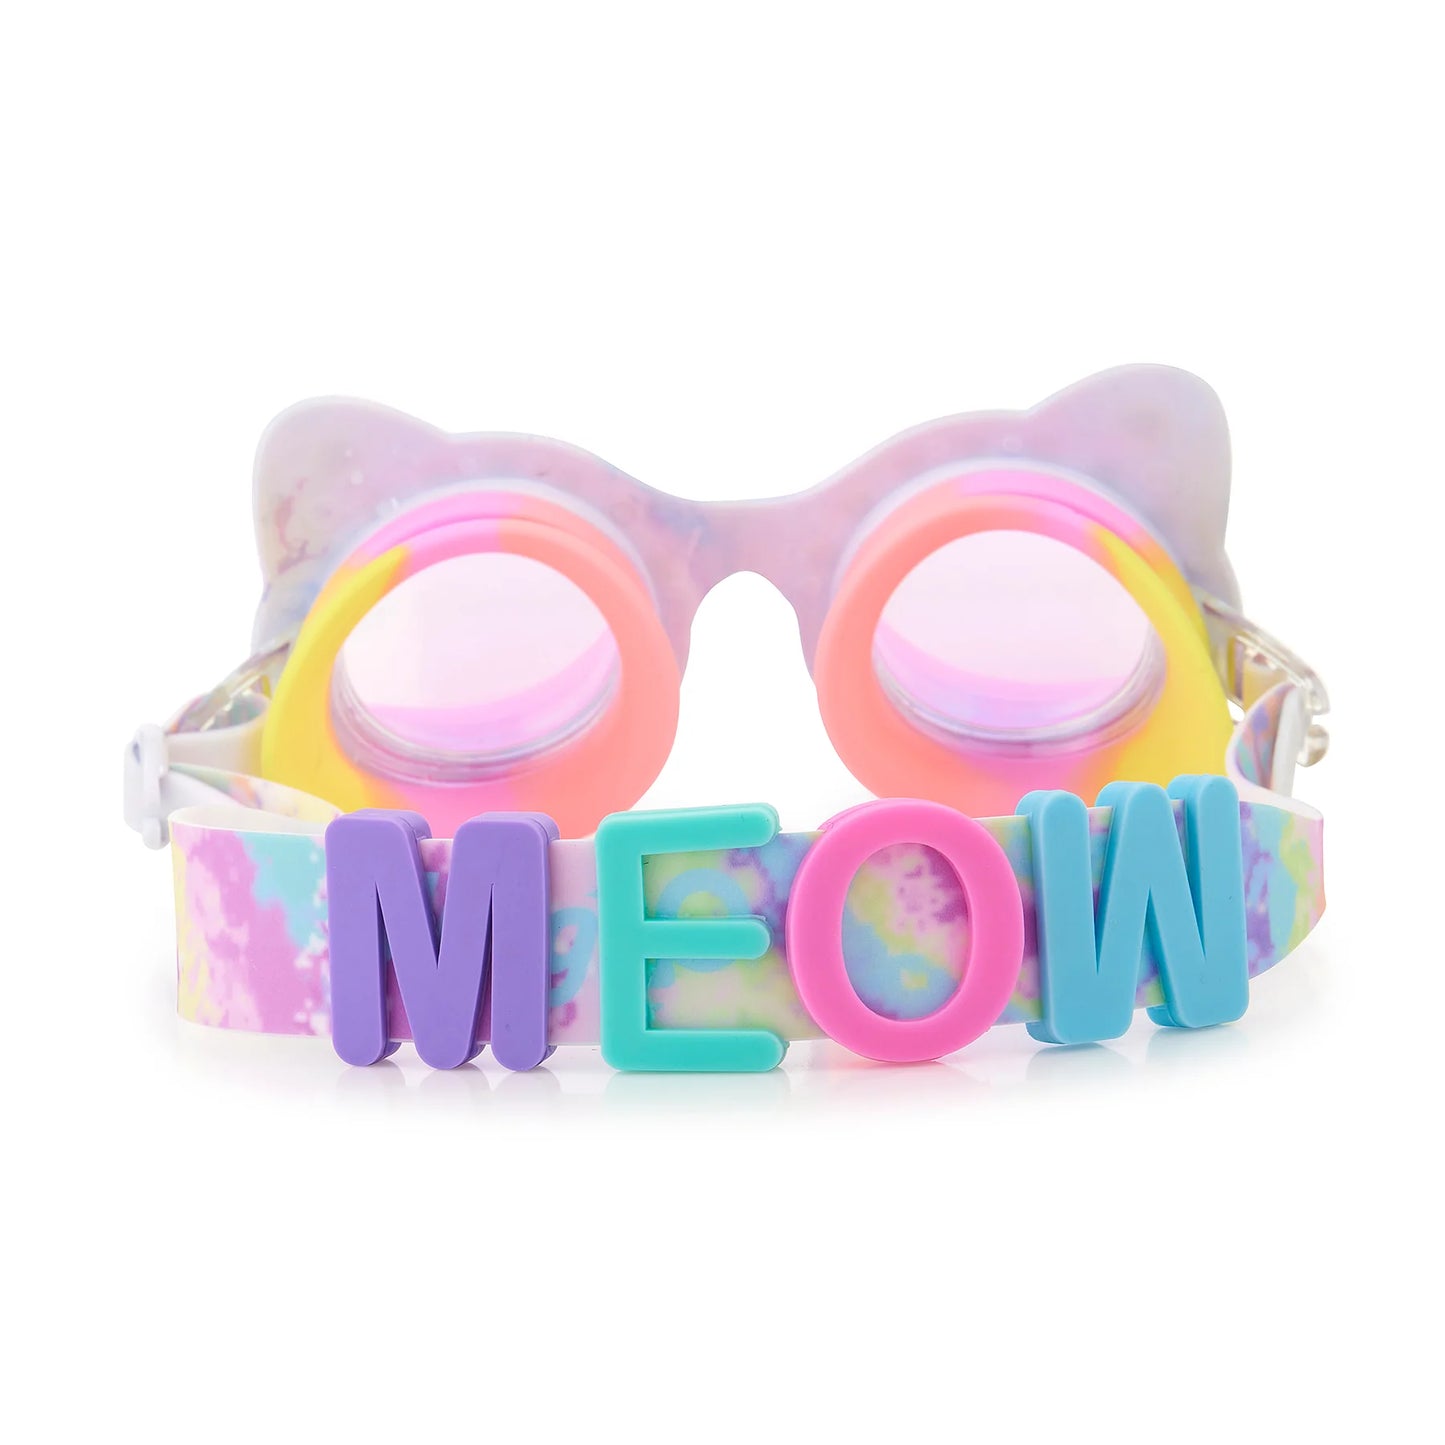 Bling2O Cat Middleton Swim Goggles